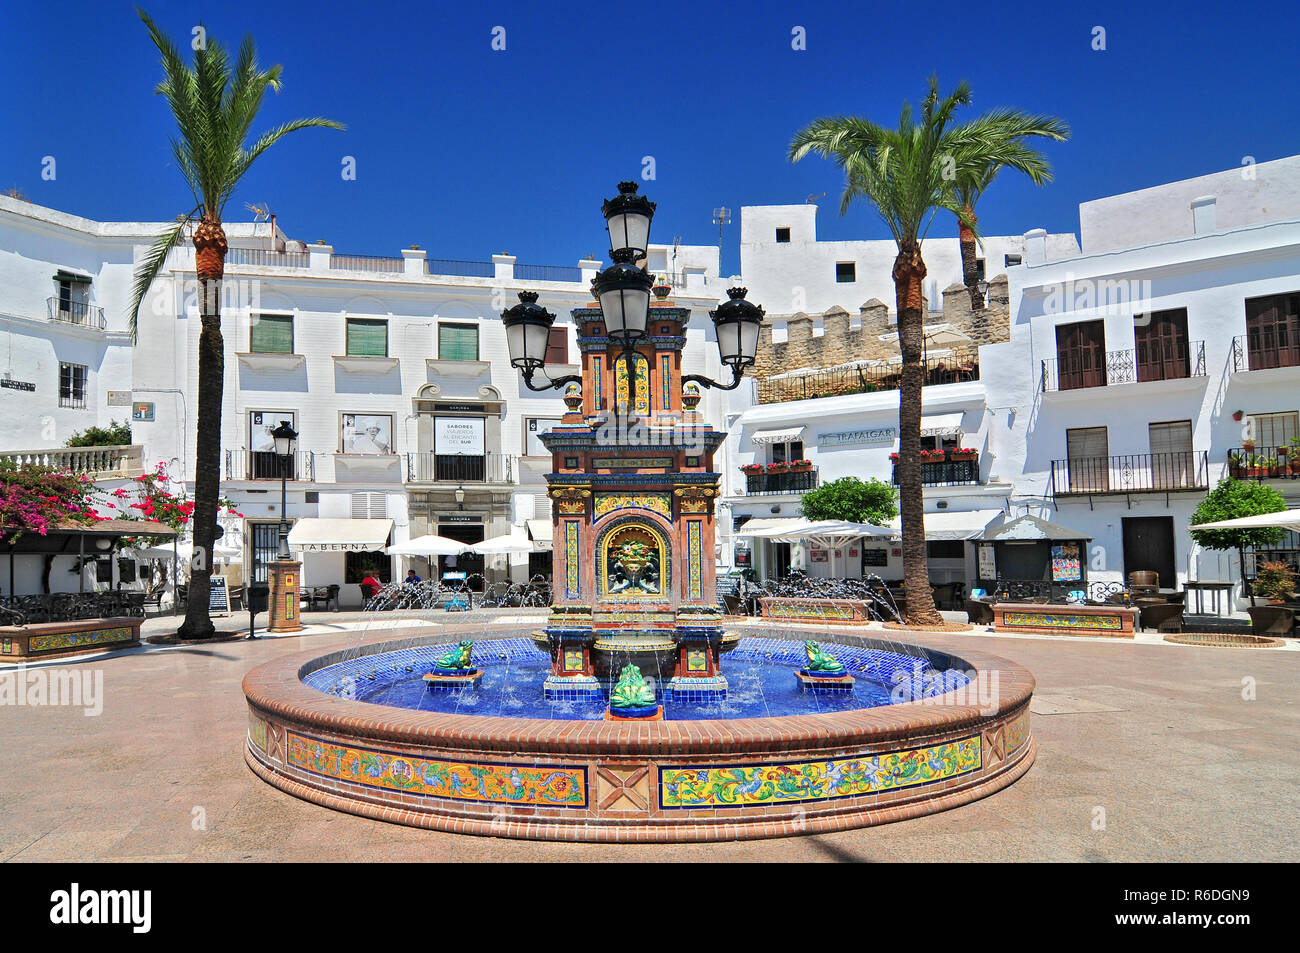 Ceramic Tile Water Feature In The Plaza De Espana, Vejer De La Frontera, Costa De La Luz, Province Of Cadiz, Andalusia Stock Photo